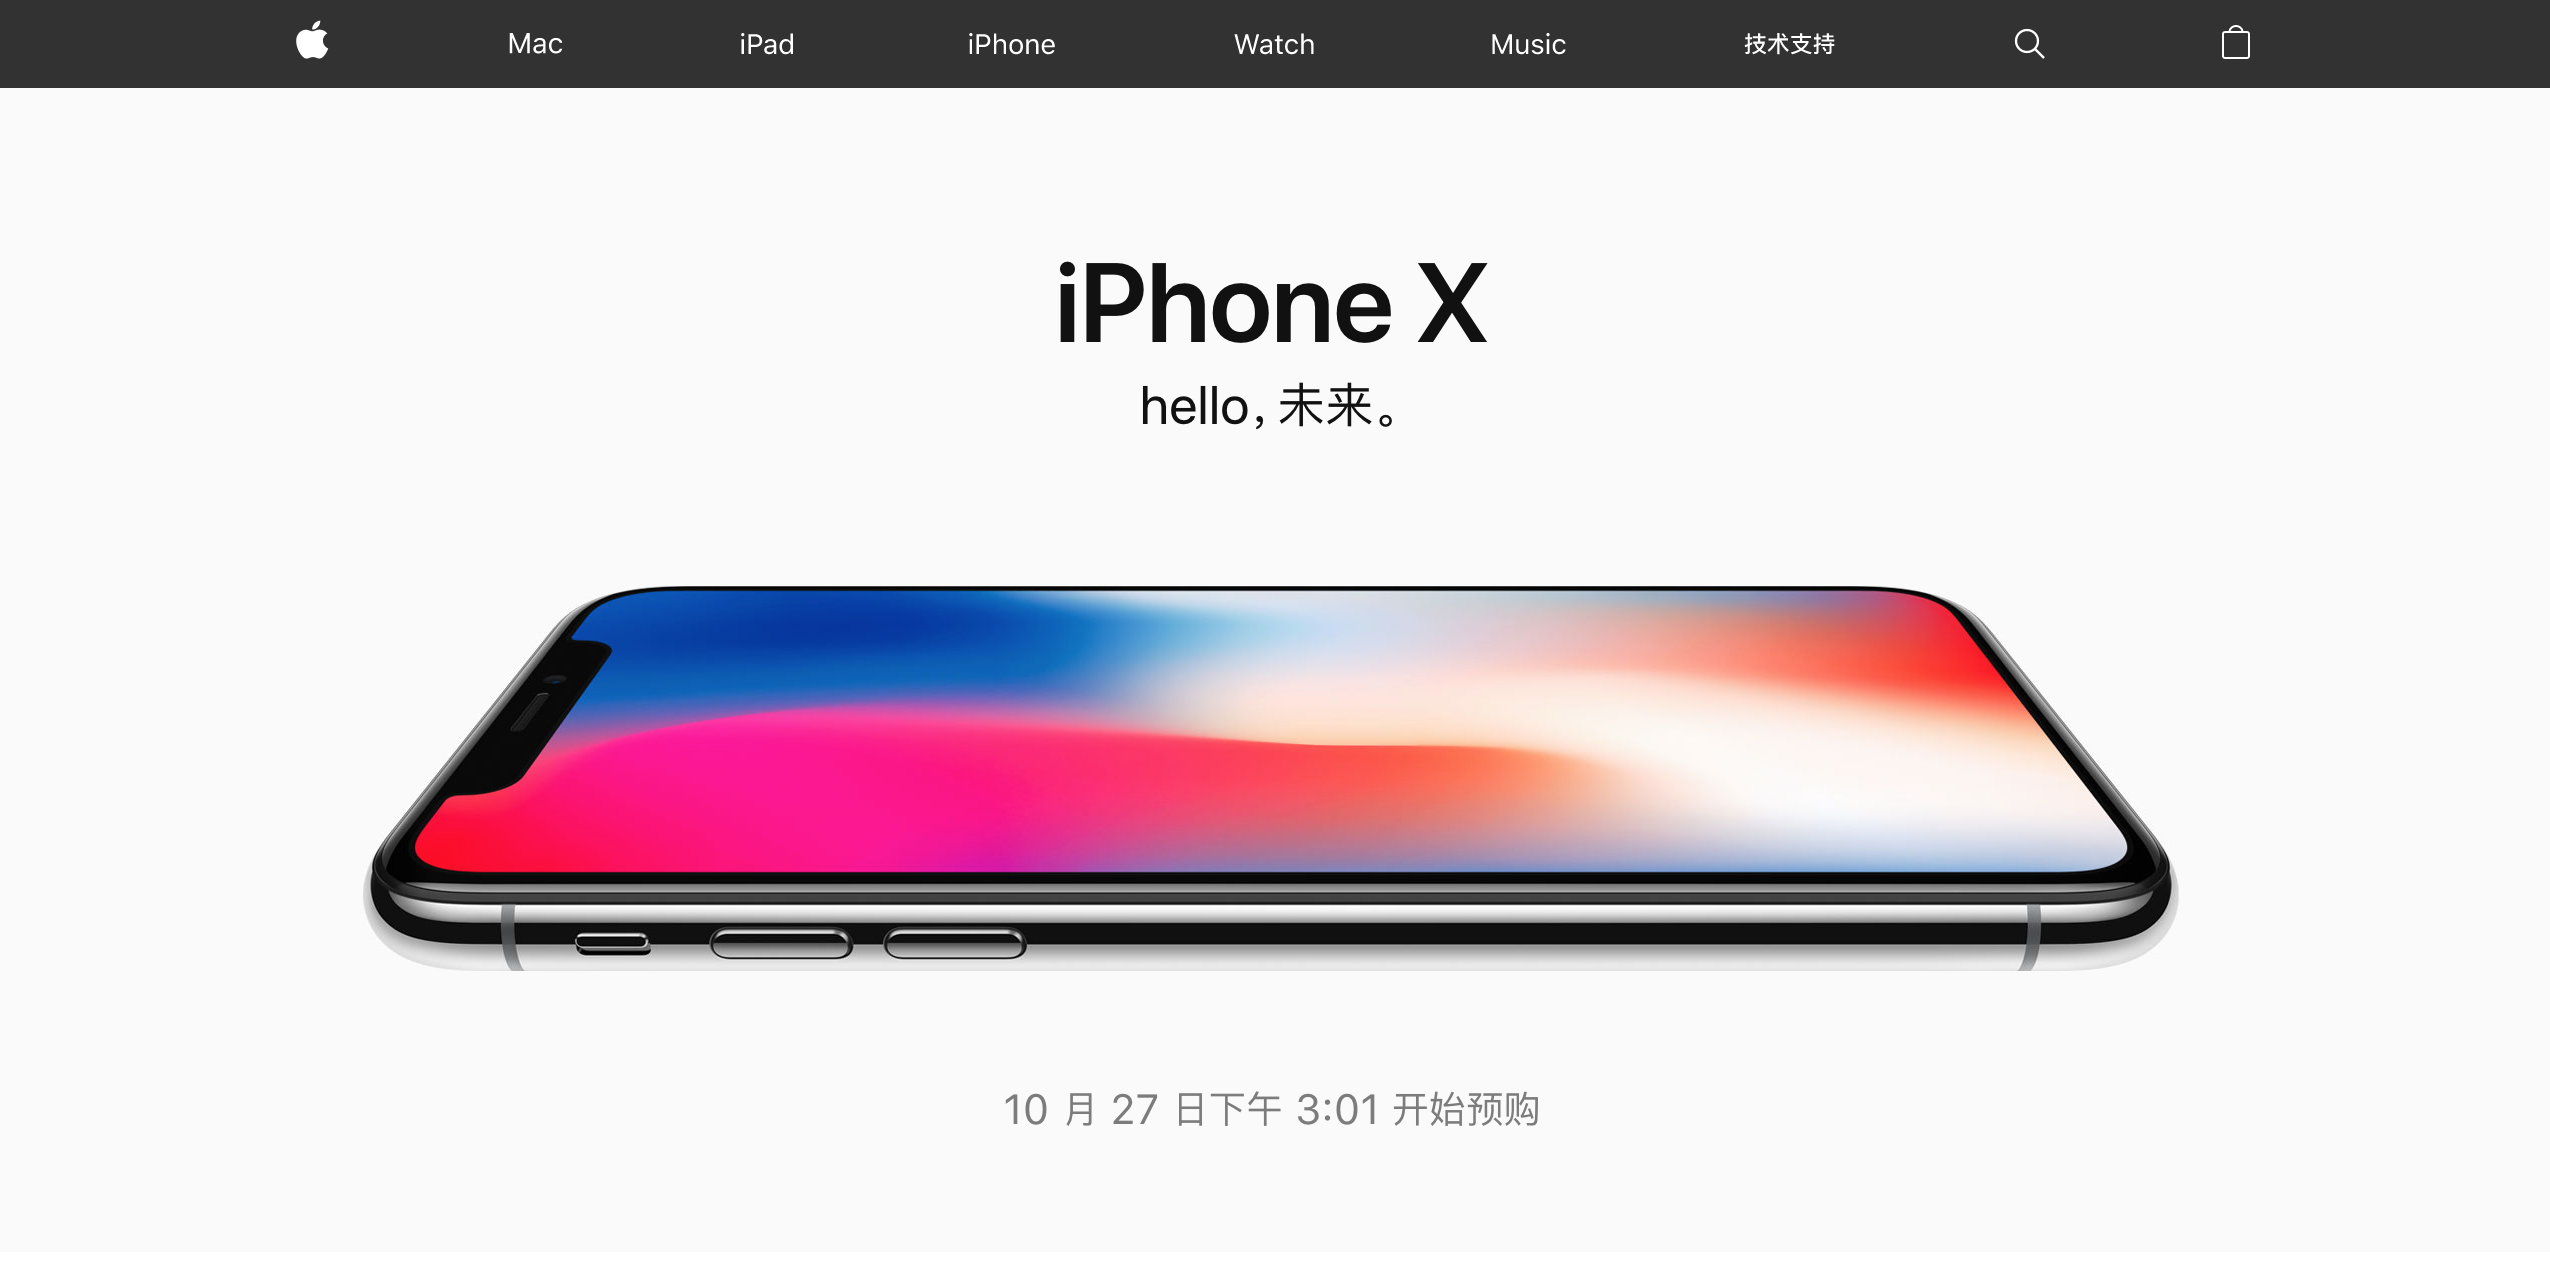 预购即将开启 iPhone X上中国苹果官方主页